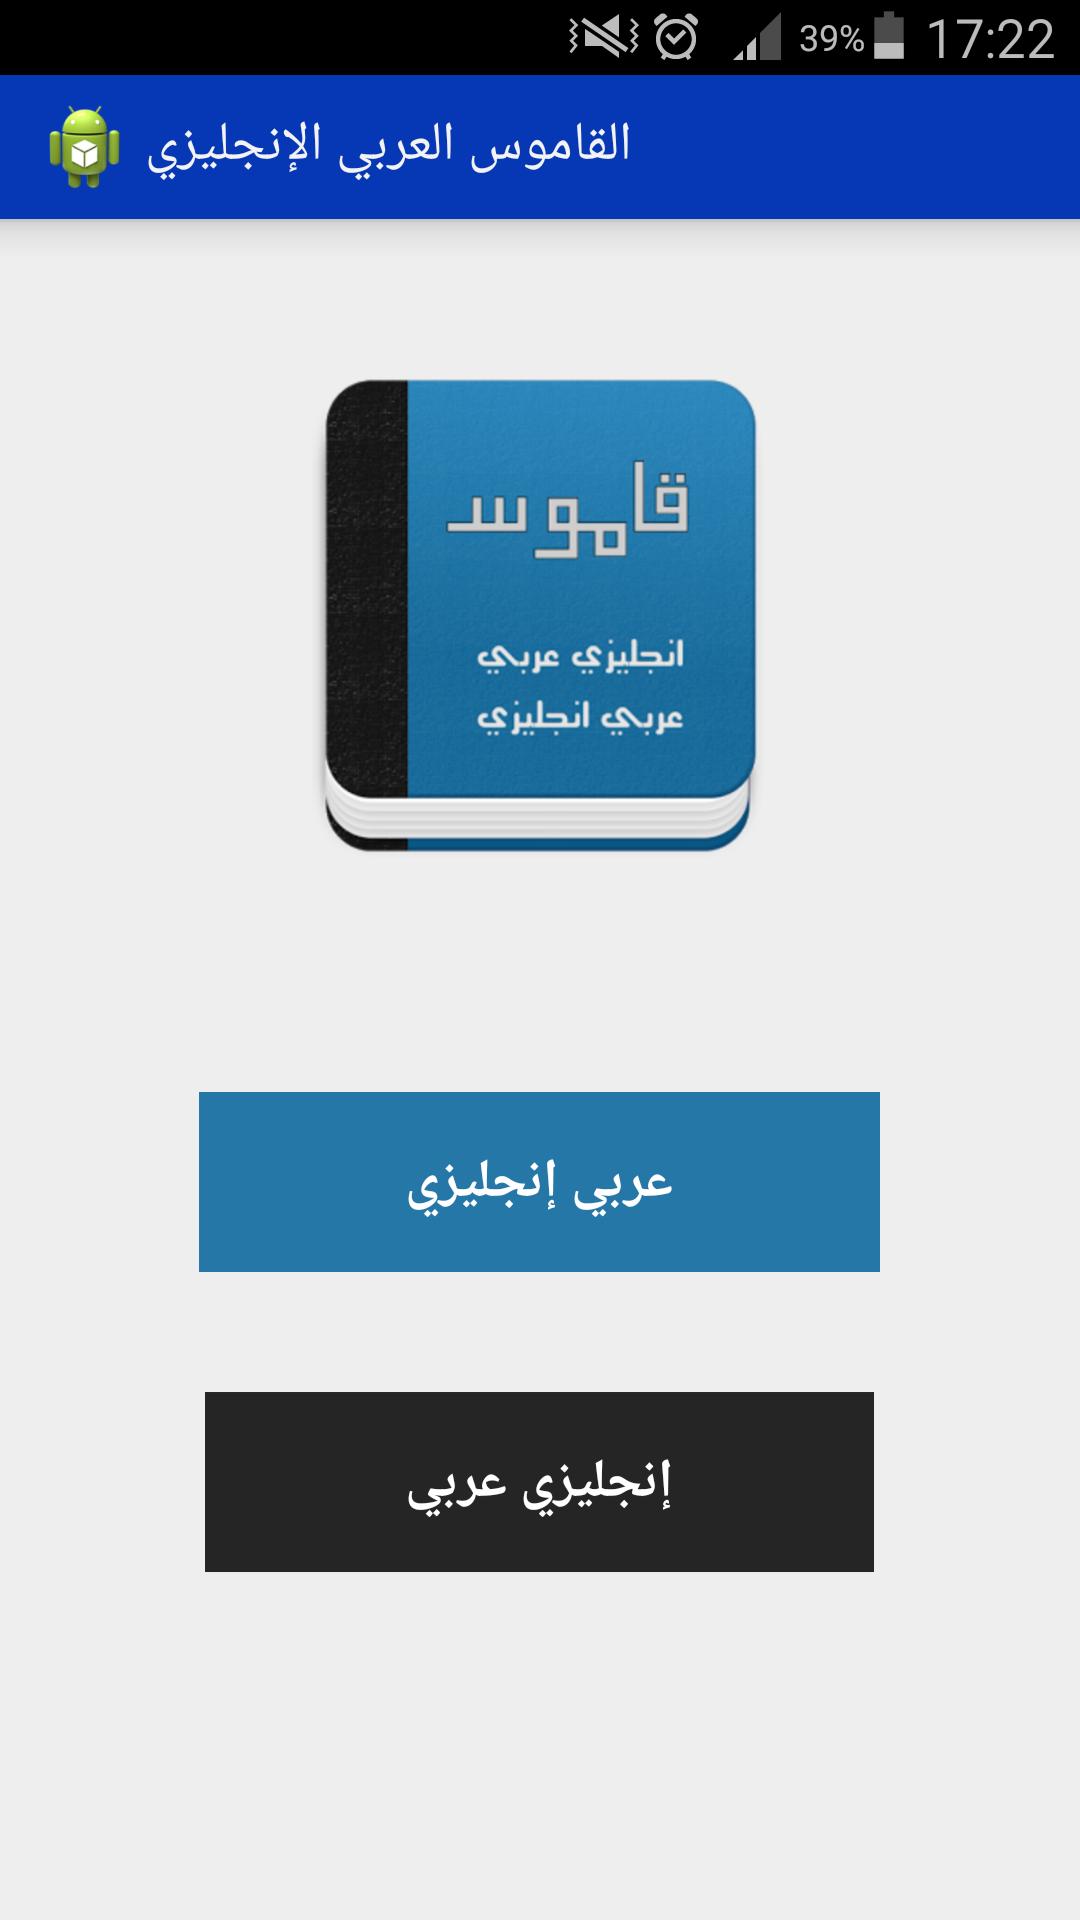 قاموس انجليزي عربي بدون انترنت for Android - APK Download